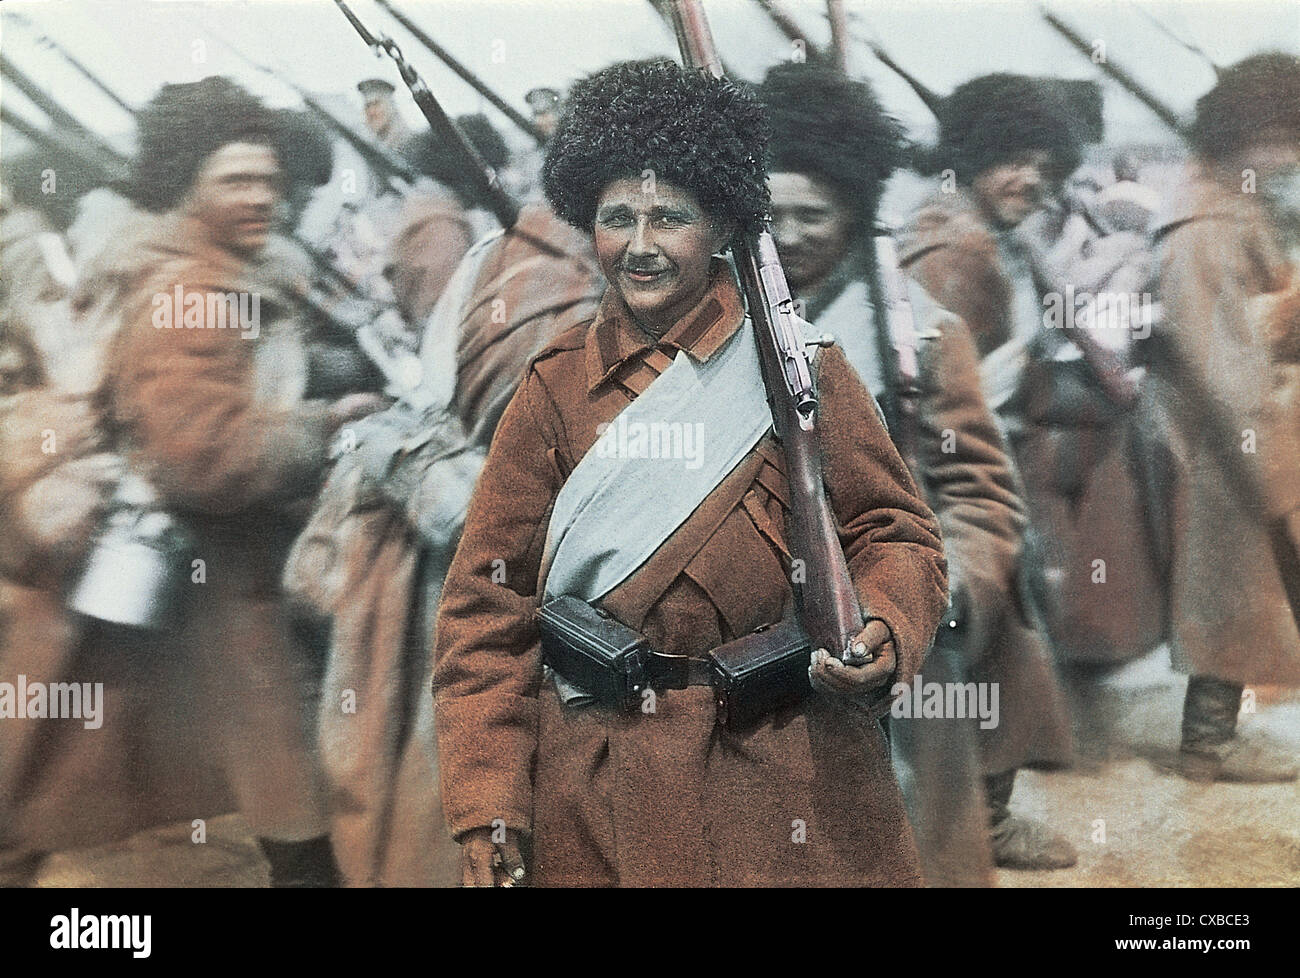 Koloriertes Foto von russischen Kosakensoldaten in Port Arthur während des Russisch-Japanischen Krieges, Port Arthur, China, 1905. (Foto von Burton Holmes) Stockfoto